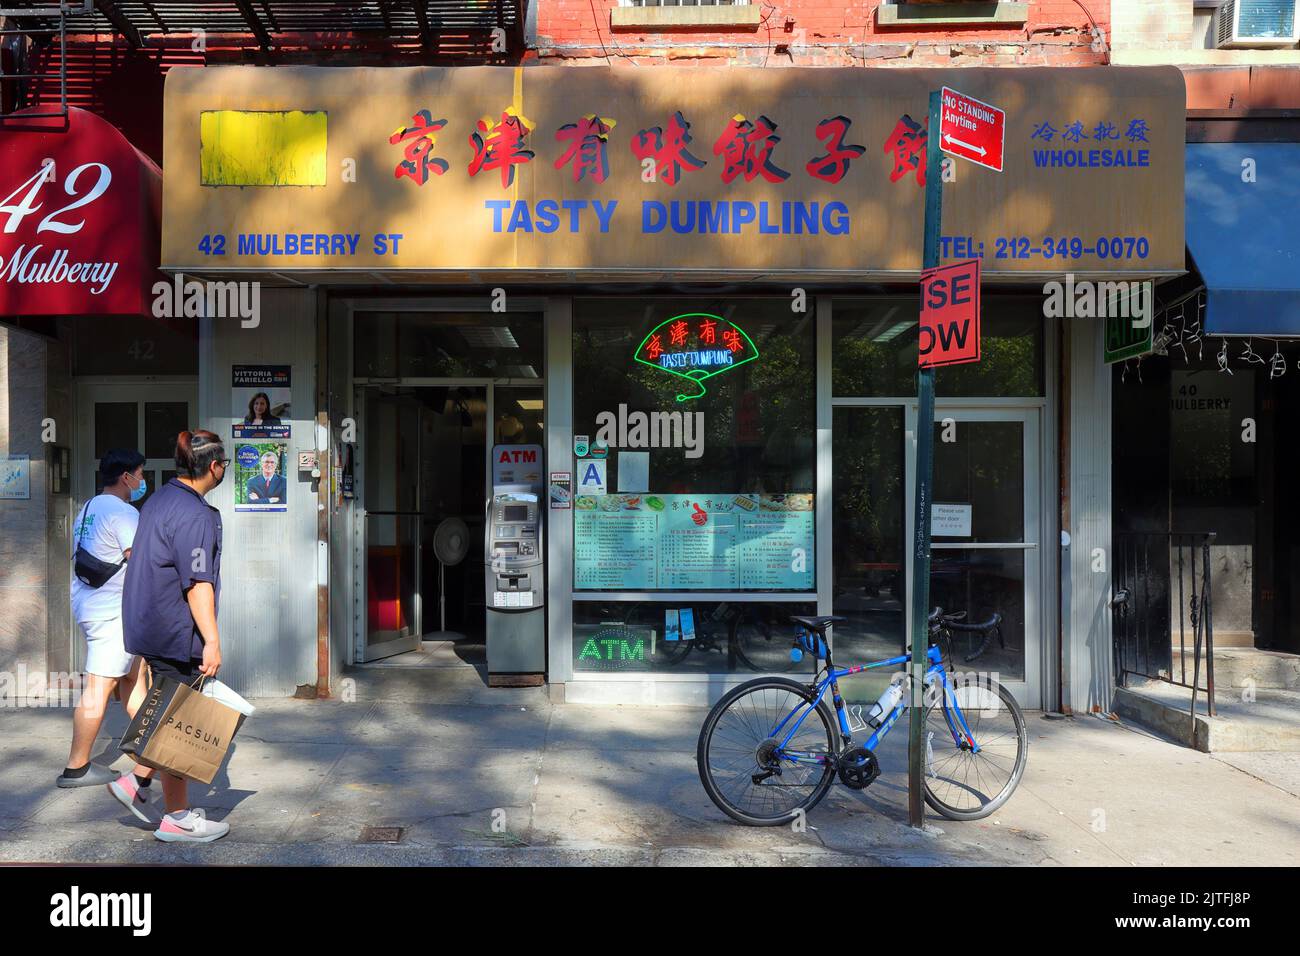 Tasty Dumpling, 42 Mulberry St, Nueva York, Nueva York, Nueva York, foto del escaparate de una tienda de dumpling frito en Manhattan Chinatown. Foto de stock